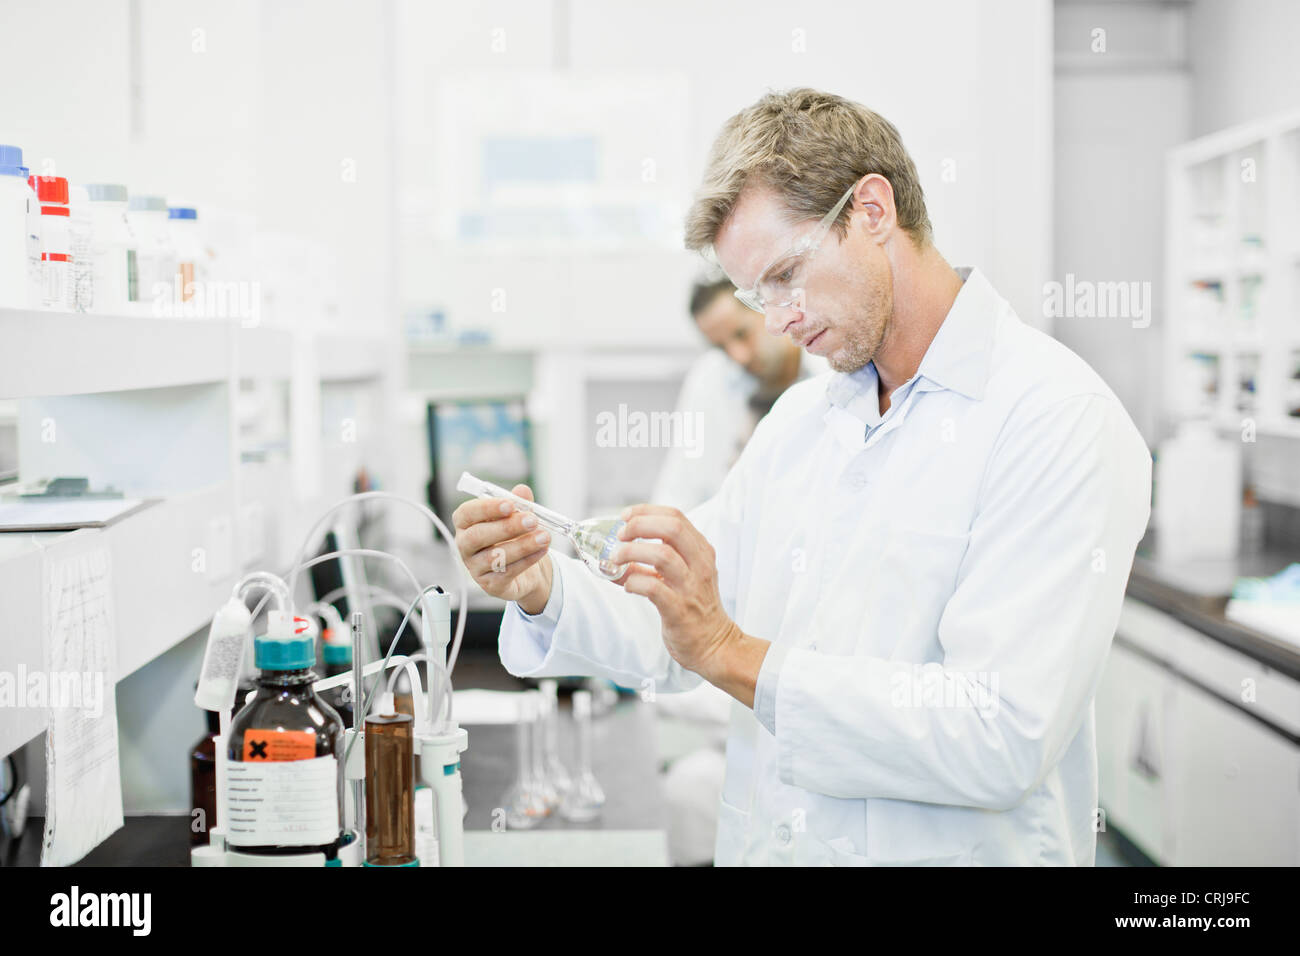 Scientist examining liquid in lab Stock Photo